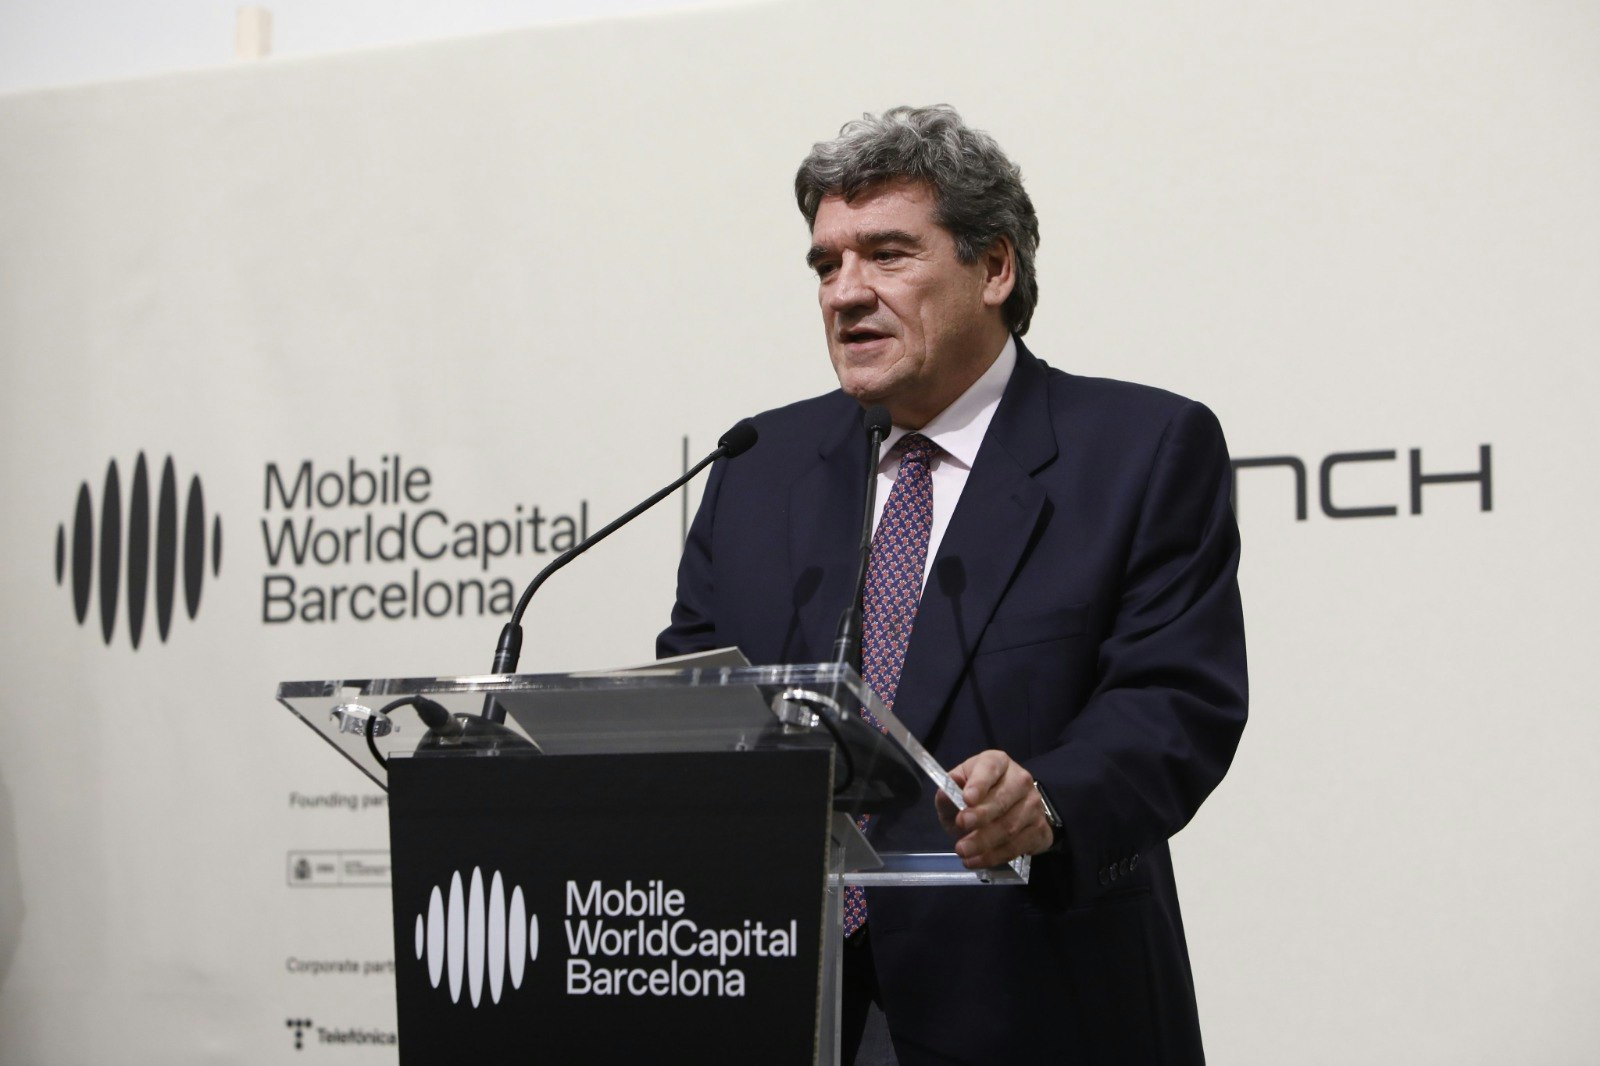 José Luis Escrivá, Spain’s minister for digital transformation